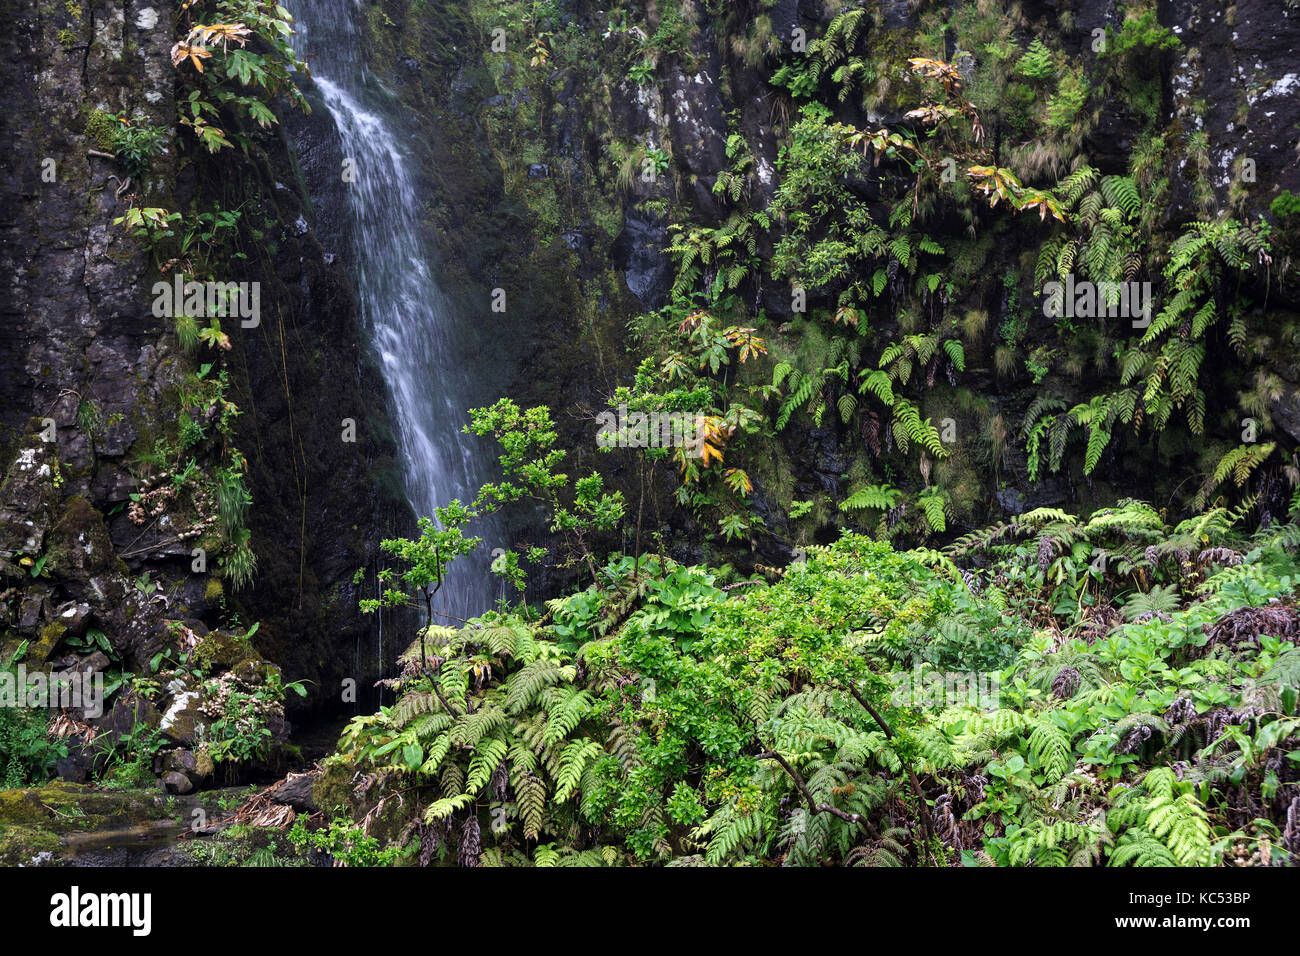 Cascada con la típica vegetación de helechos (tracheophyta), cerca de lajedo, isla de flores, Azores, Portugal Foto de stock